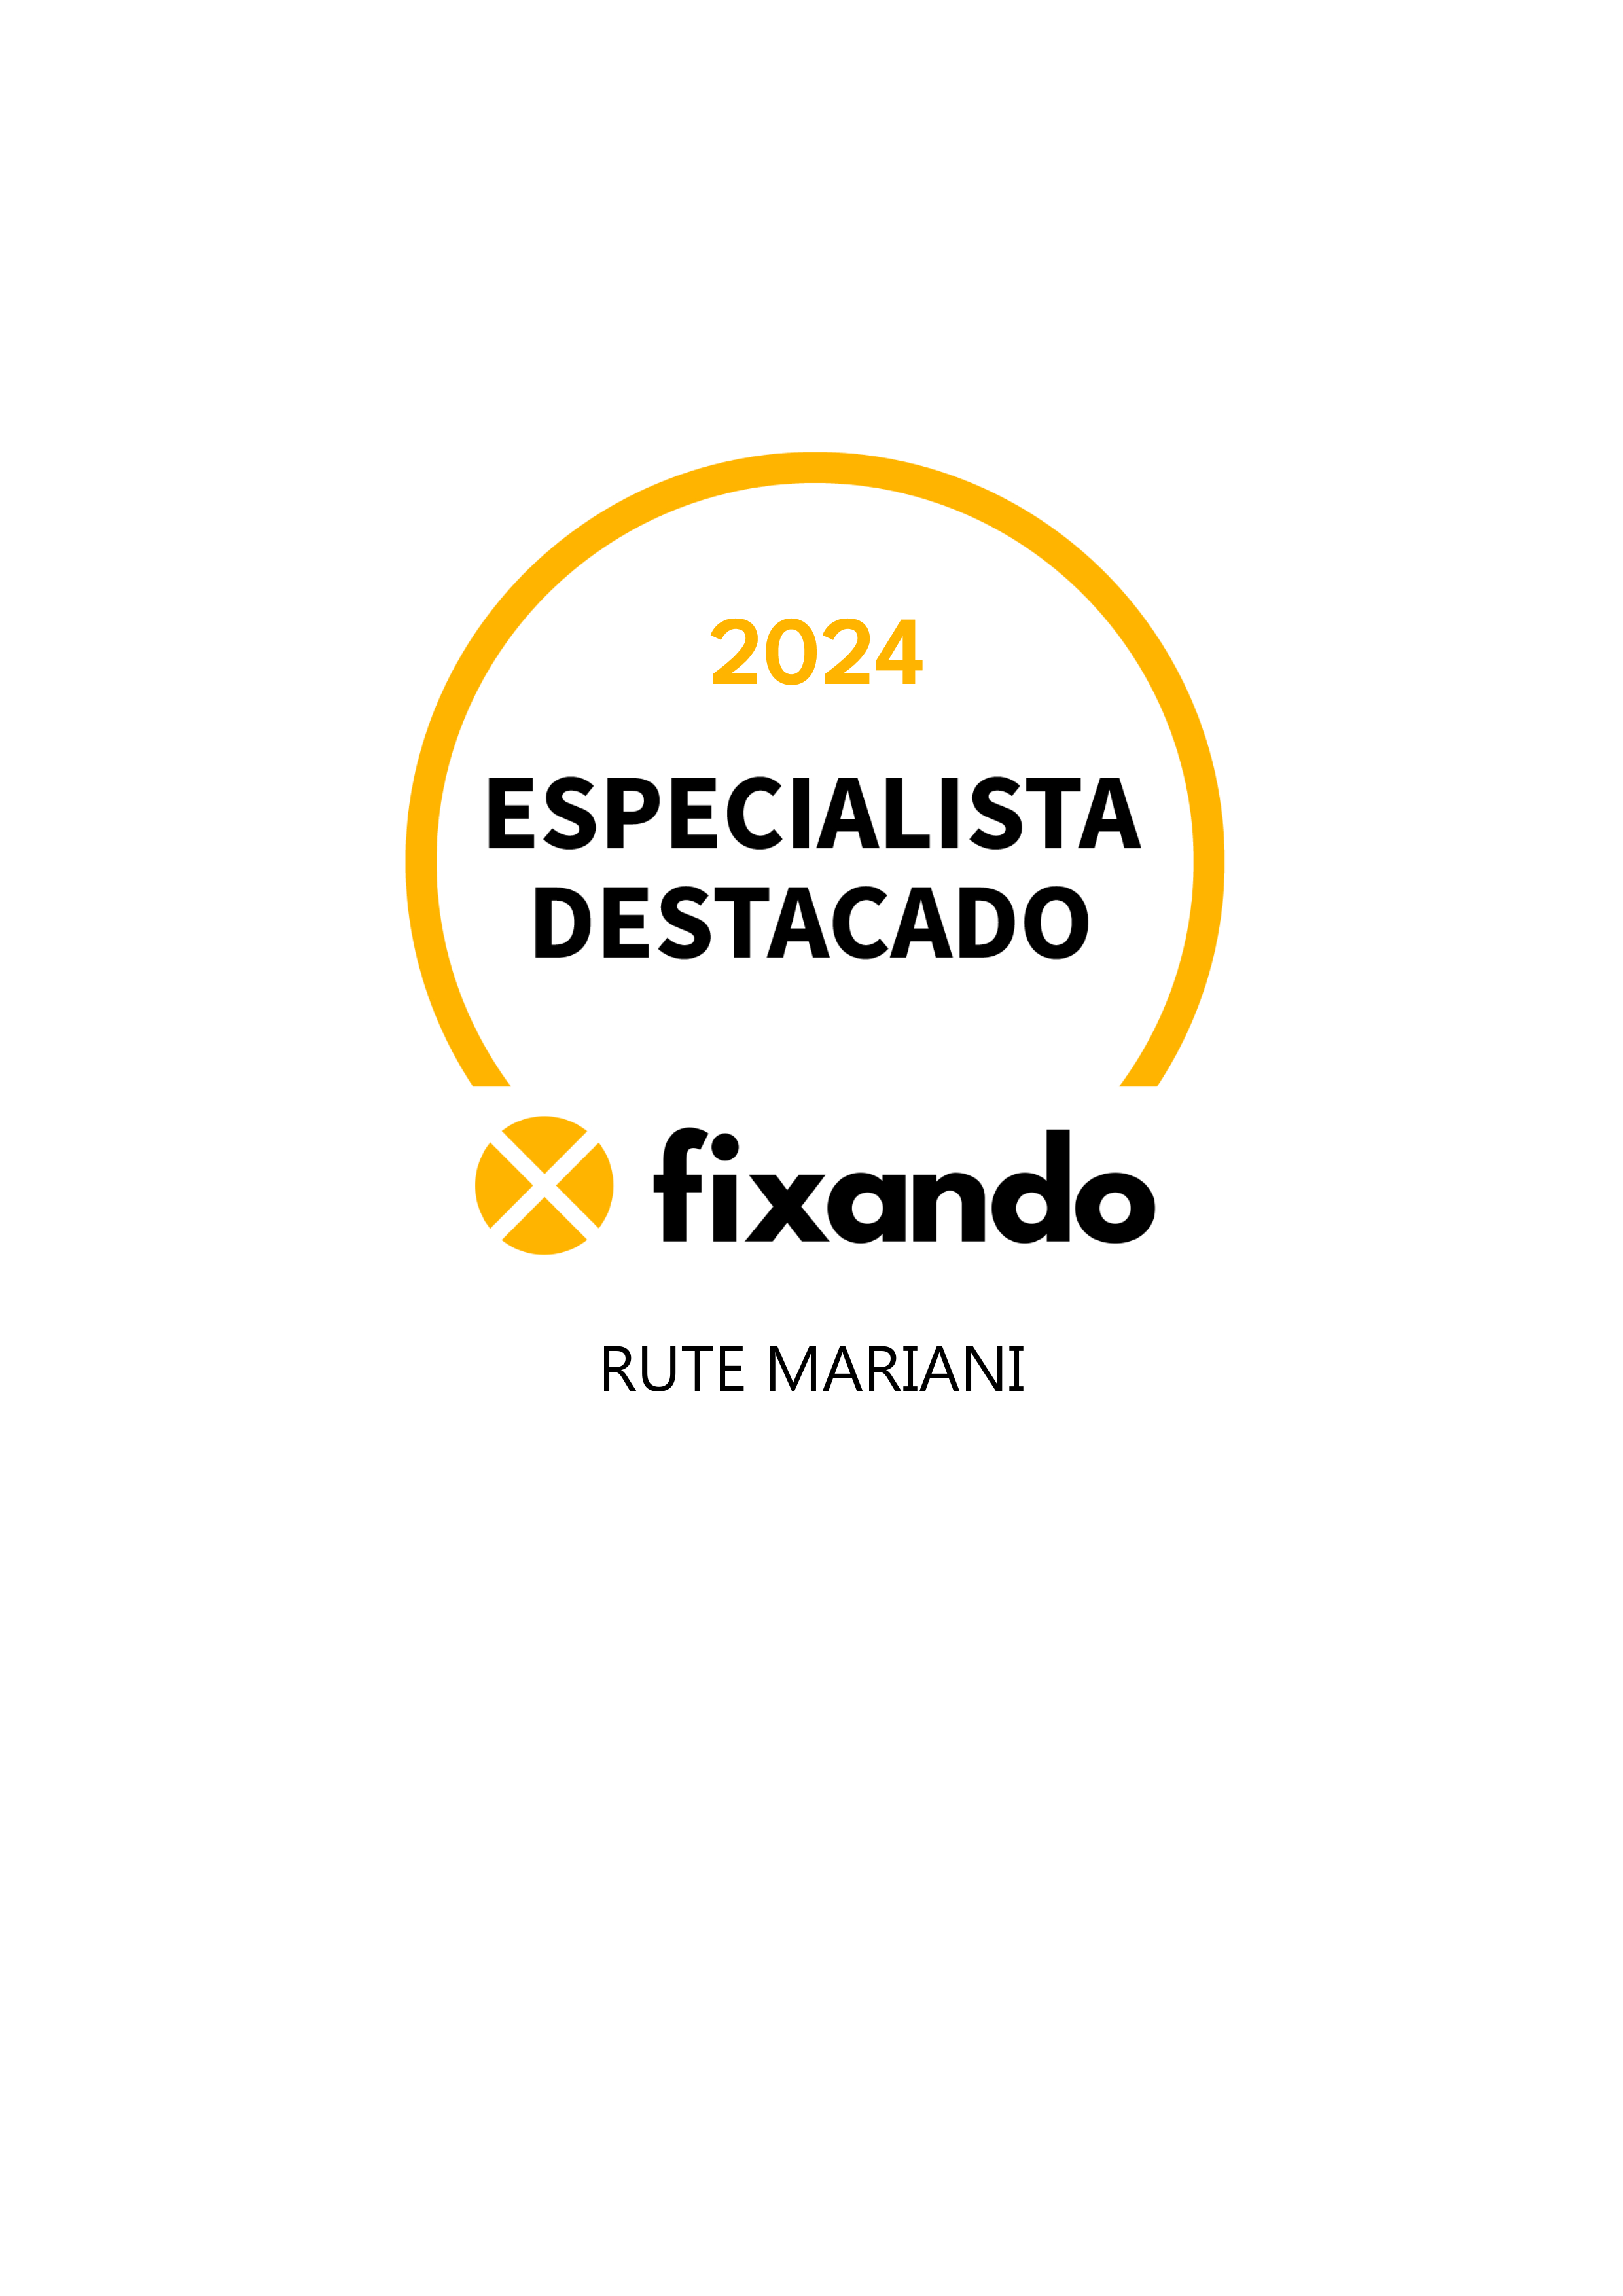 Rute Mariani - Vila Real de Santo António - Profissionais Financeiros e de Planeamento